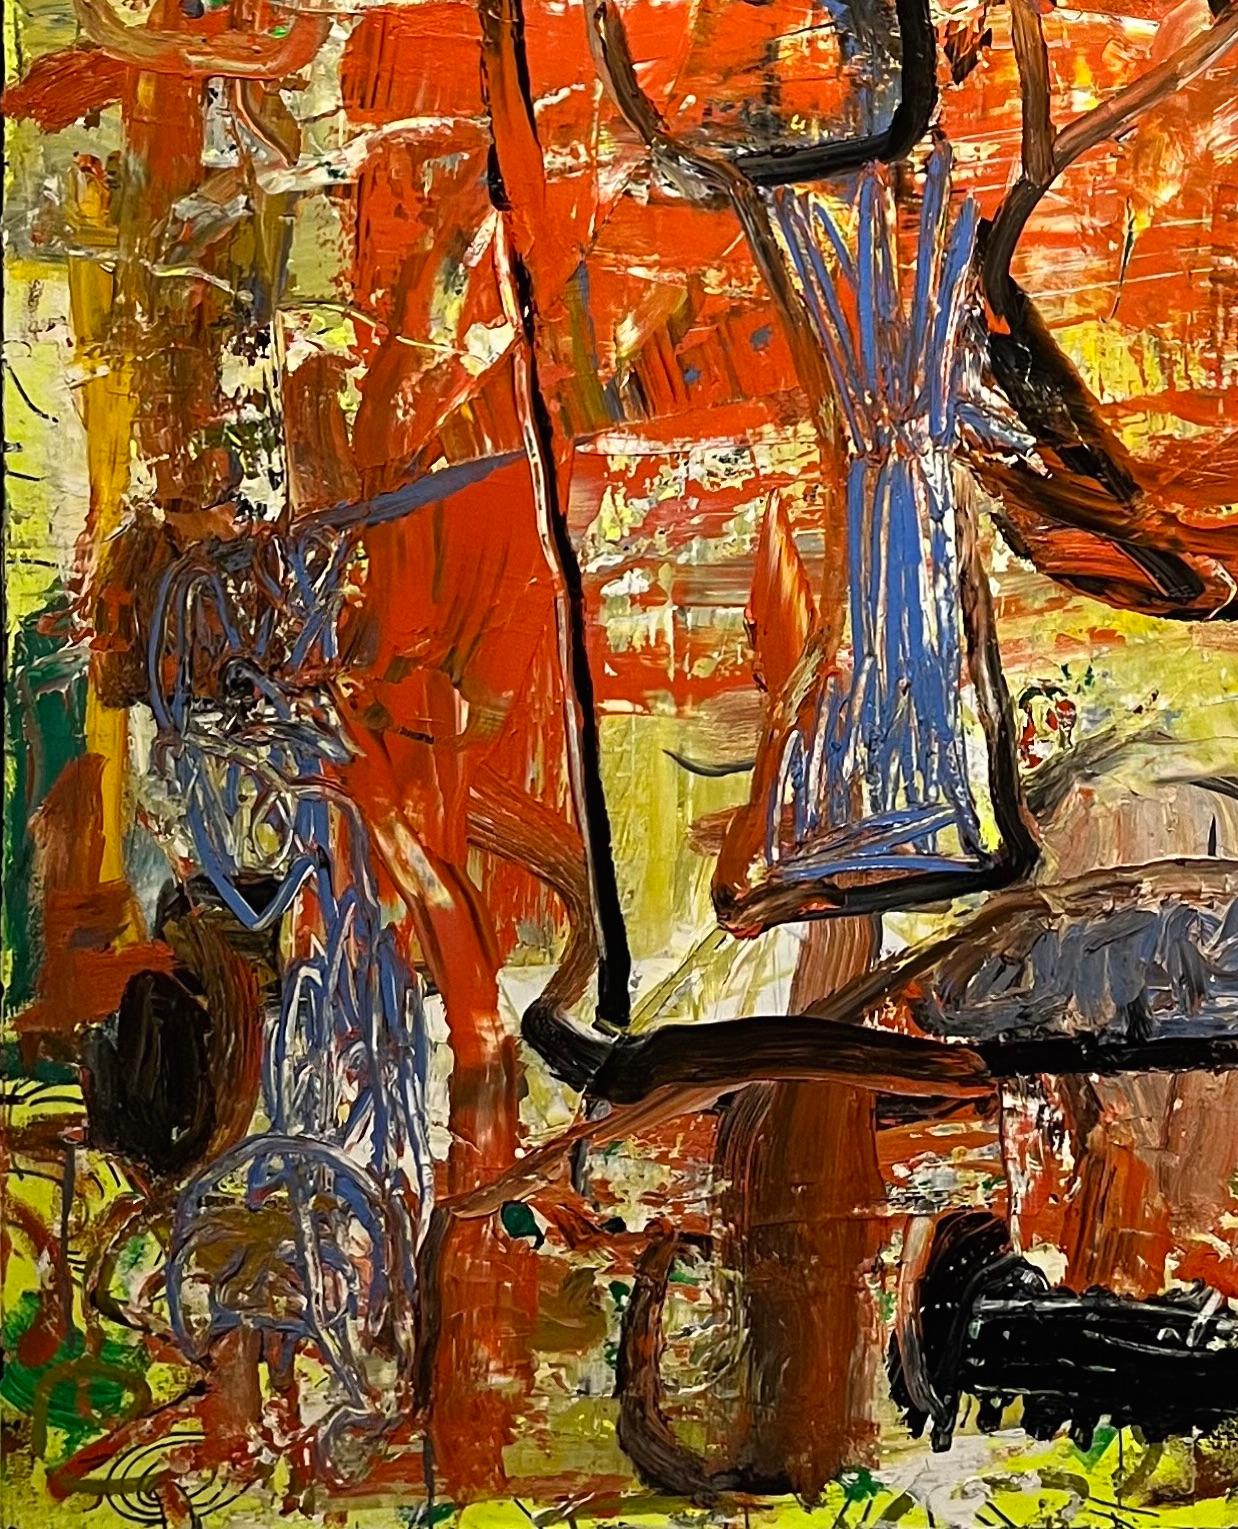 Dieses abstrakte Ölgemälde des verstorbenen Künstlers Dick Wray aus Houston zeichnet sich durch seine kinetische Energie aus. Die dicken Farbschichten sorgen für eine bemerkenswerte Taktilität, die man bei Dick Wrays Kunstwerken häufig findet. Die